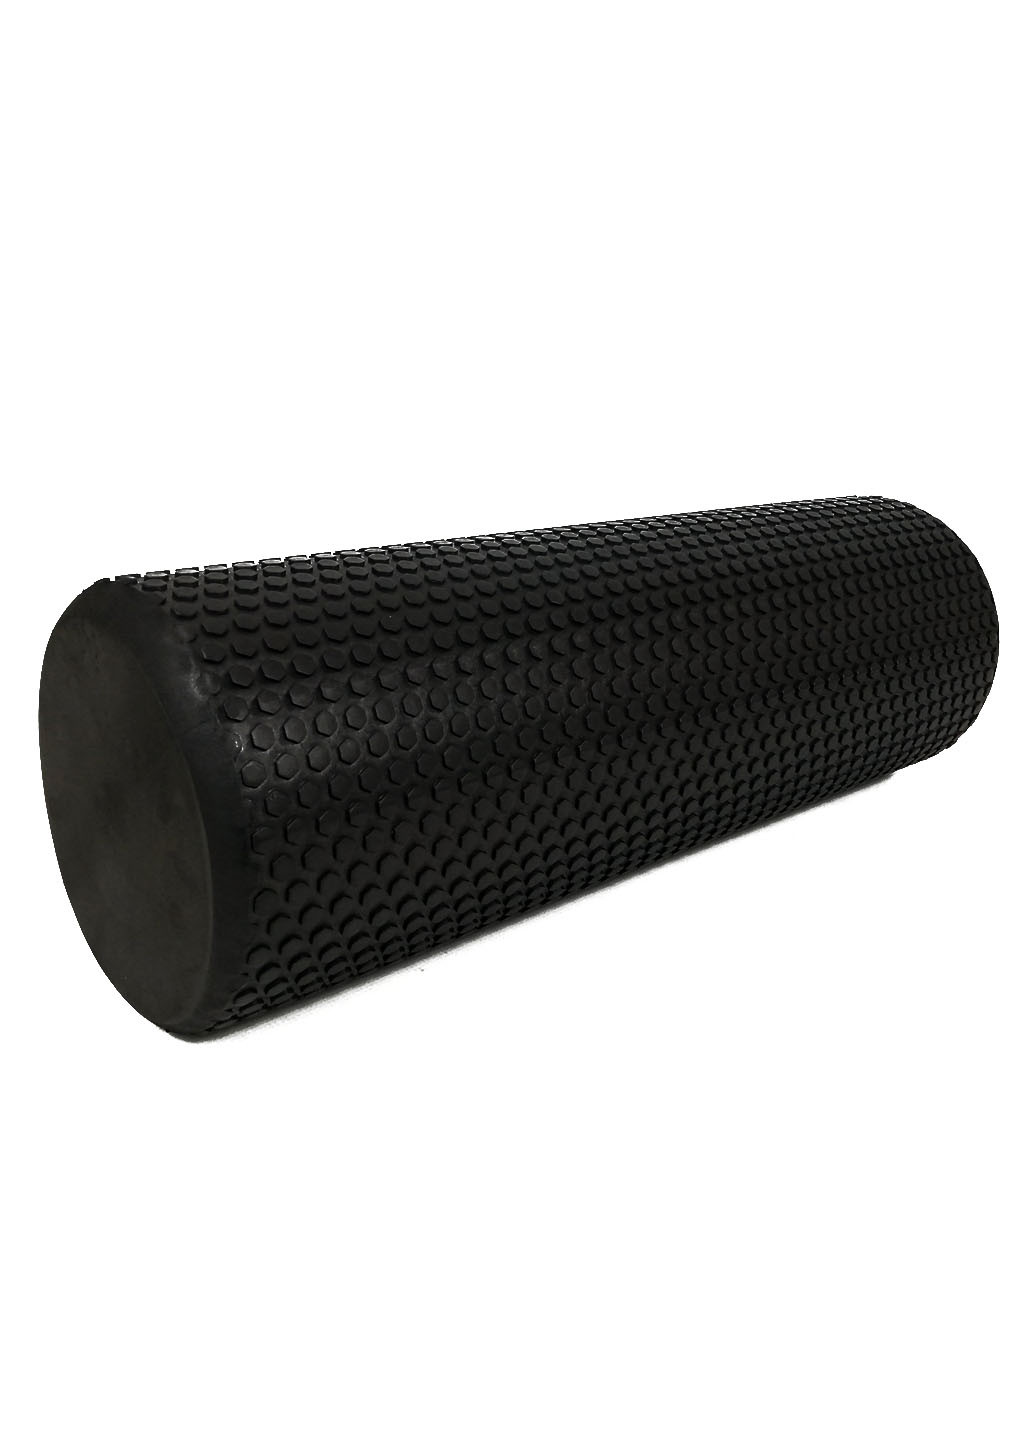 Масажний ролик Foam Roller 45 см чорний (легкий і м'який ролер-валик для йоги, масажу всього тіла: рук, ніг, спини) EasyFit (237657468)